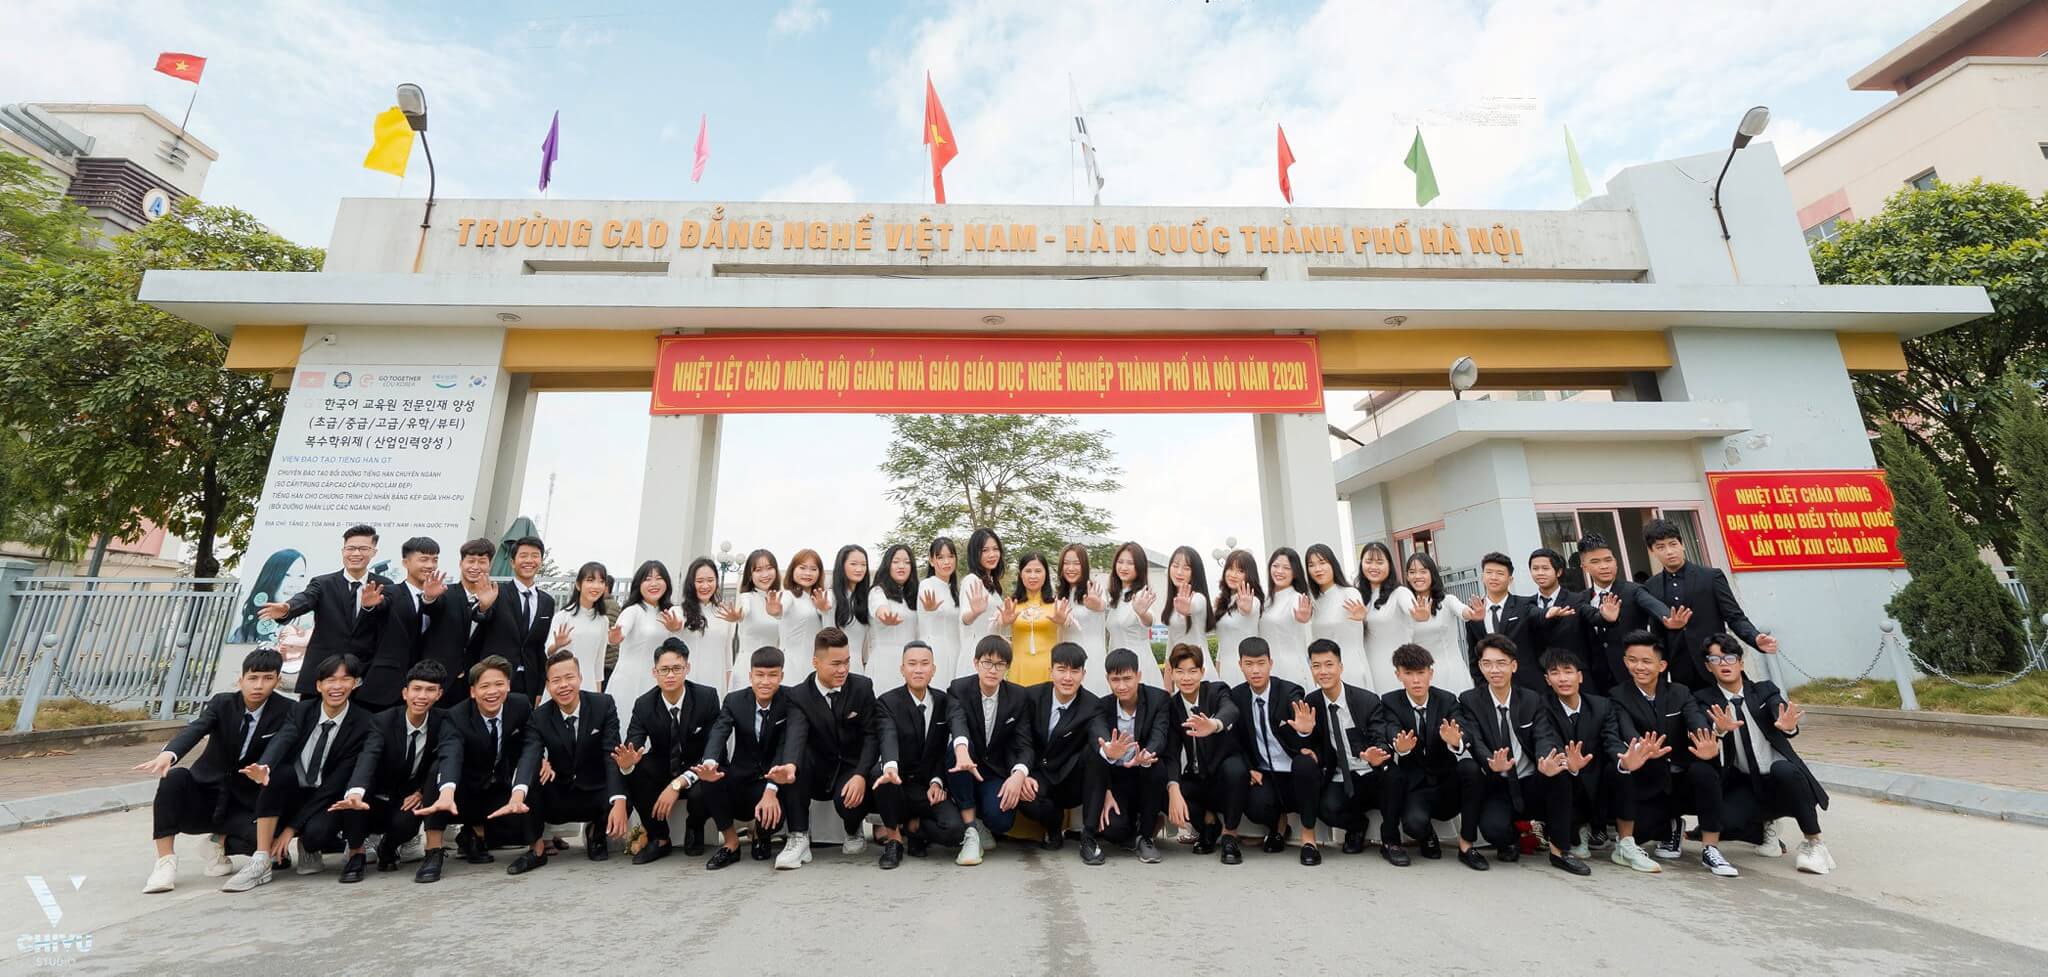 Review Trường Cao đẳng nghề Việt Nam - Hàn Quốc Thành phố Hà Nội có tốt  không?